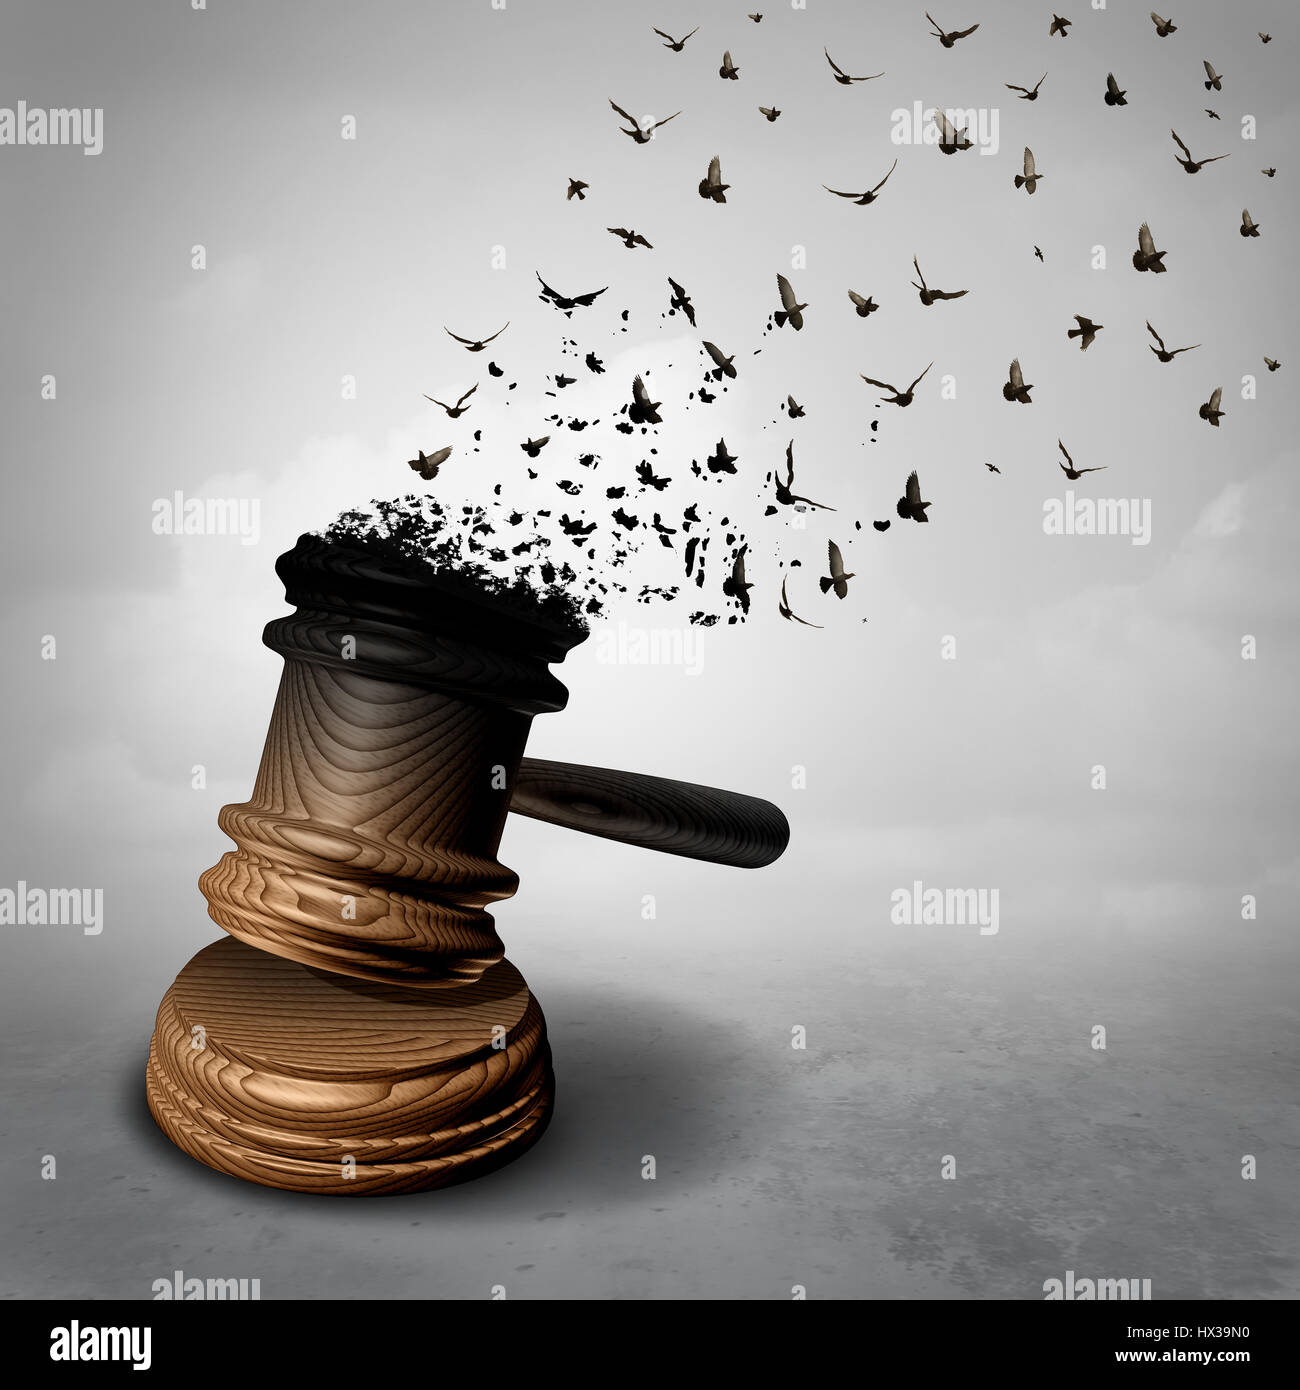 Amnesty-Konzept und Gesetz ablehnen oder symbol für eine Begnadigung durch den gesetzlichen Richterhammer oder Holzhammer in frei fliegende Vögel verwandelt. Stockfoto